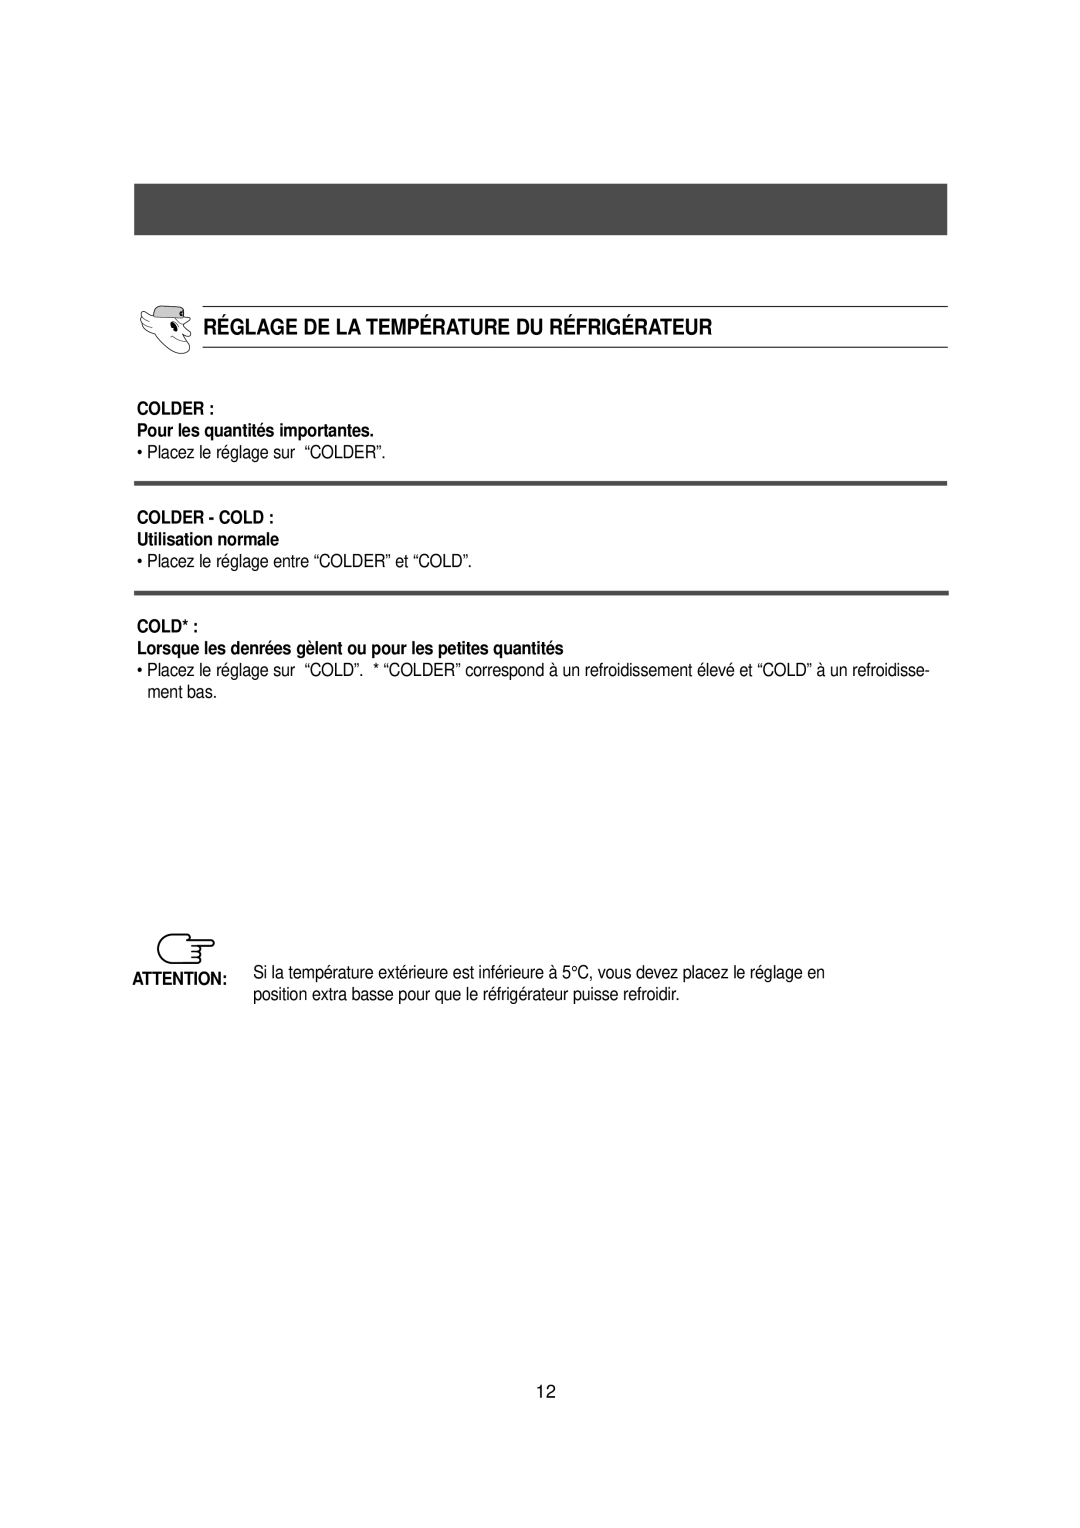 Samsung DA99-00477C manual Réglage De La Température Du Réfrigérateur, COLDER Pour les quantités importantes 